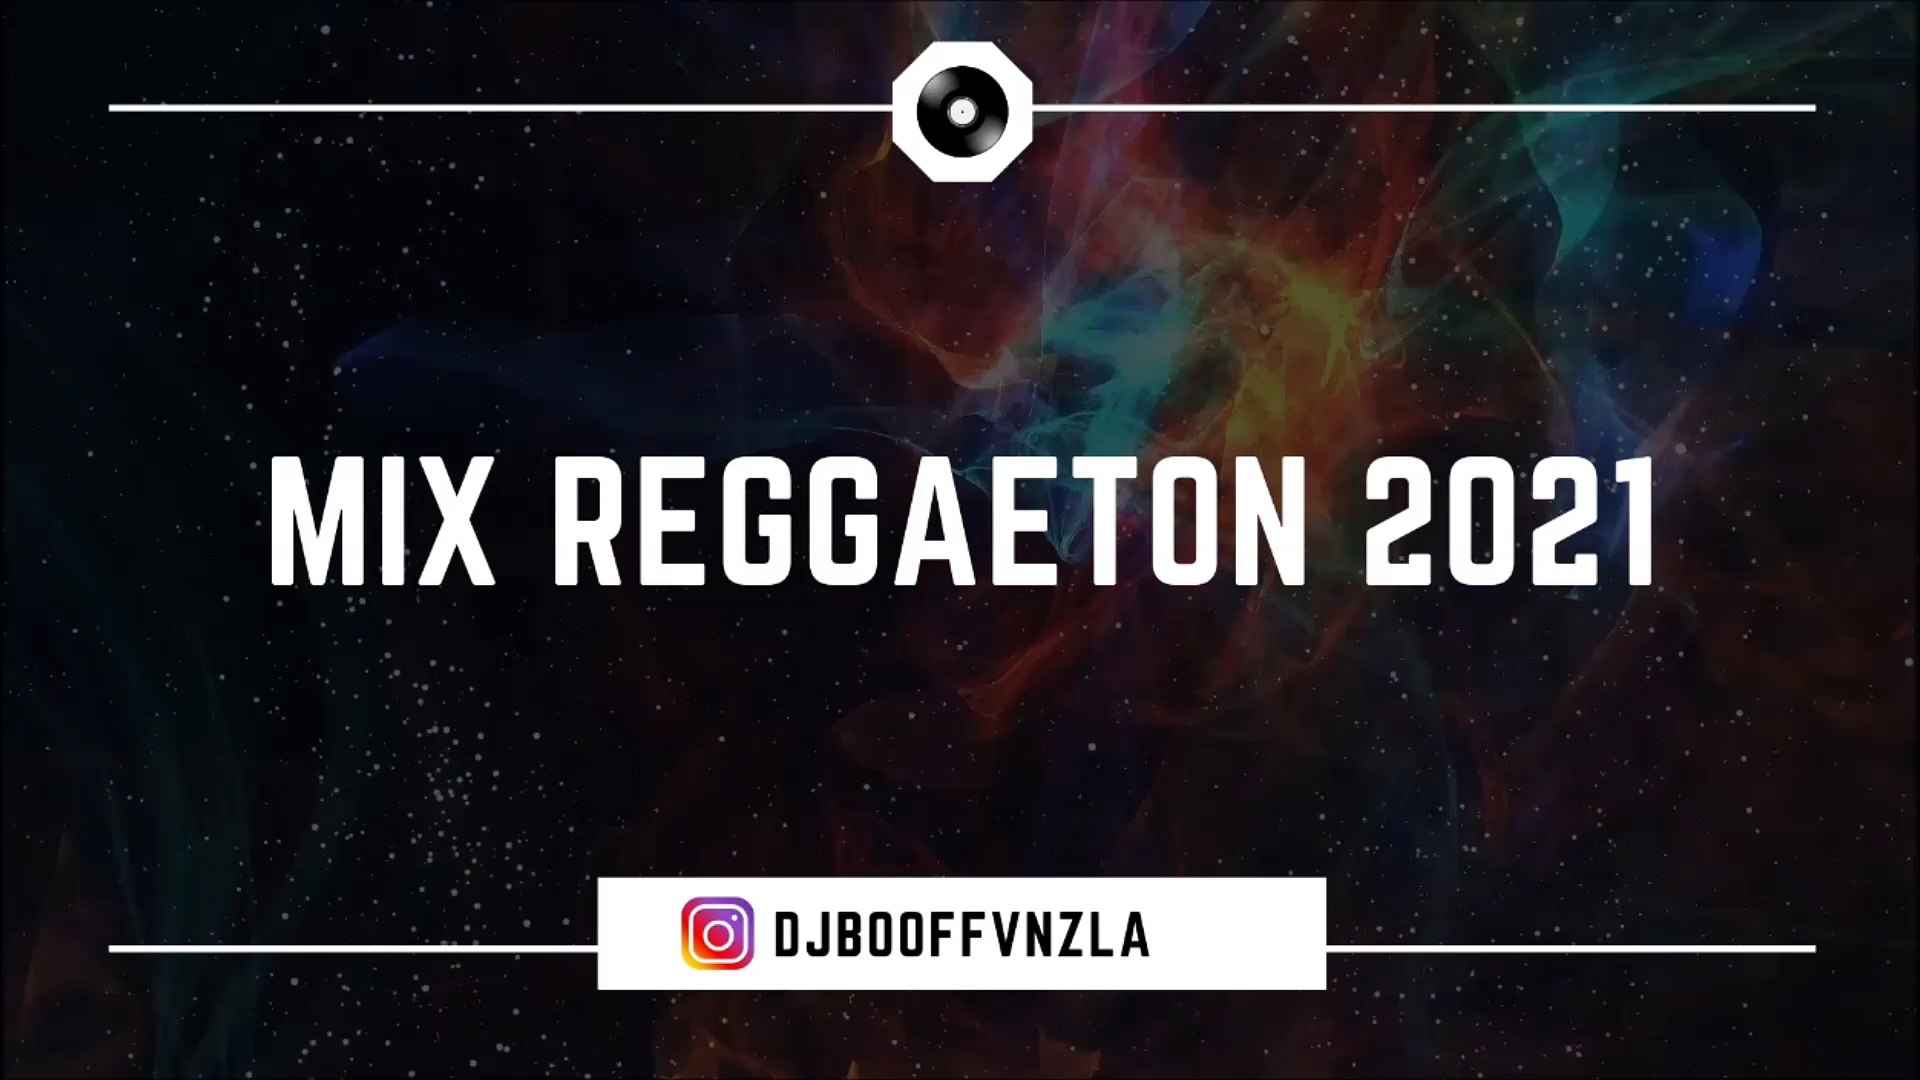 Mix reggaeton 2021 Djbooff vnzla - Vídeo Dailymotion